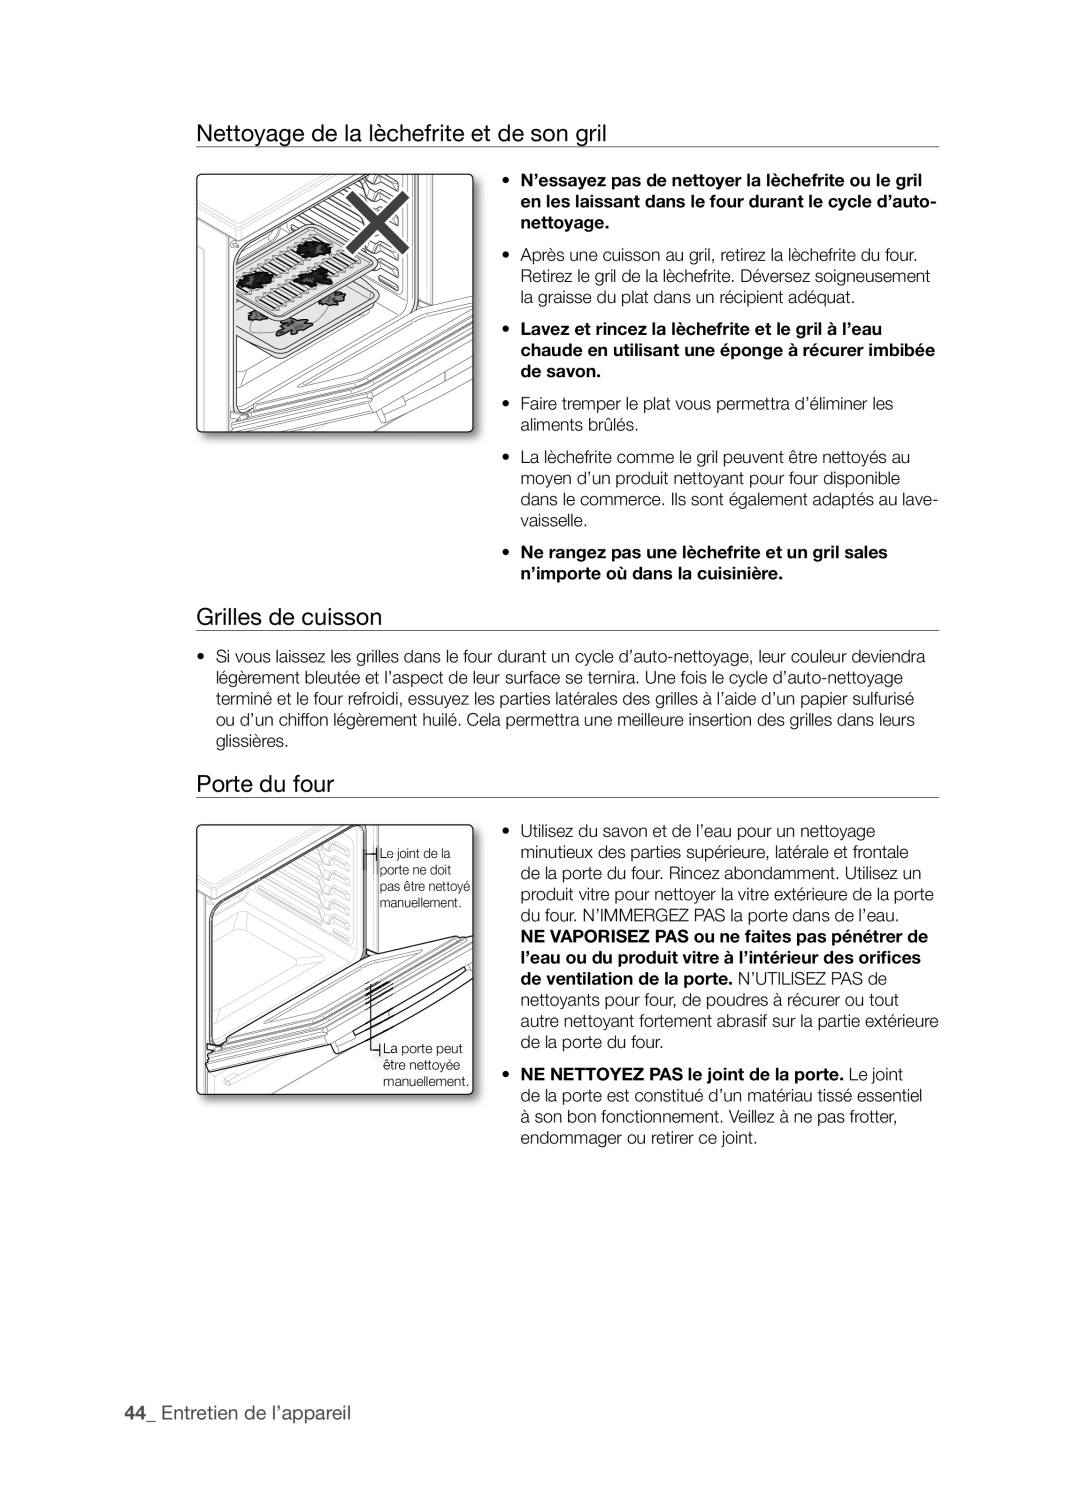 Samsung FTQ386LWX user manual Nettoyage de la lèchefrite et de son gril, Grilles de cuisson, Porte du four 